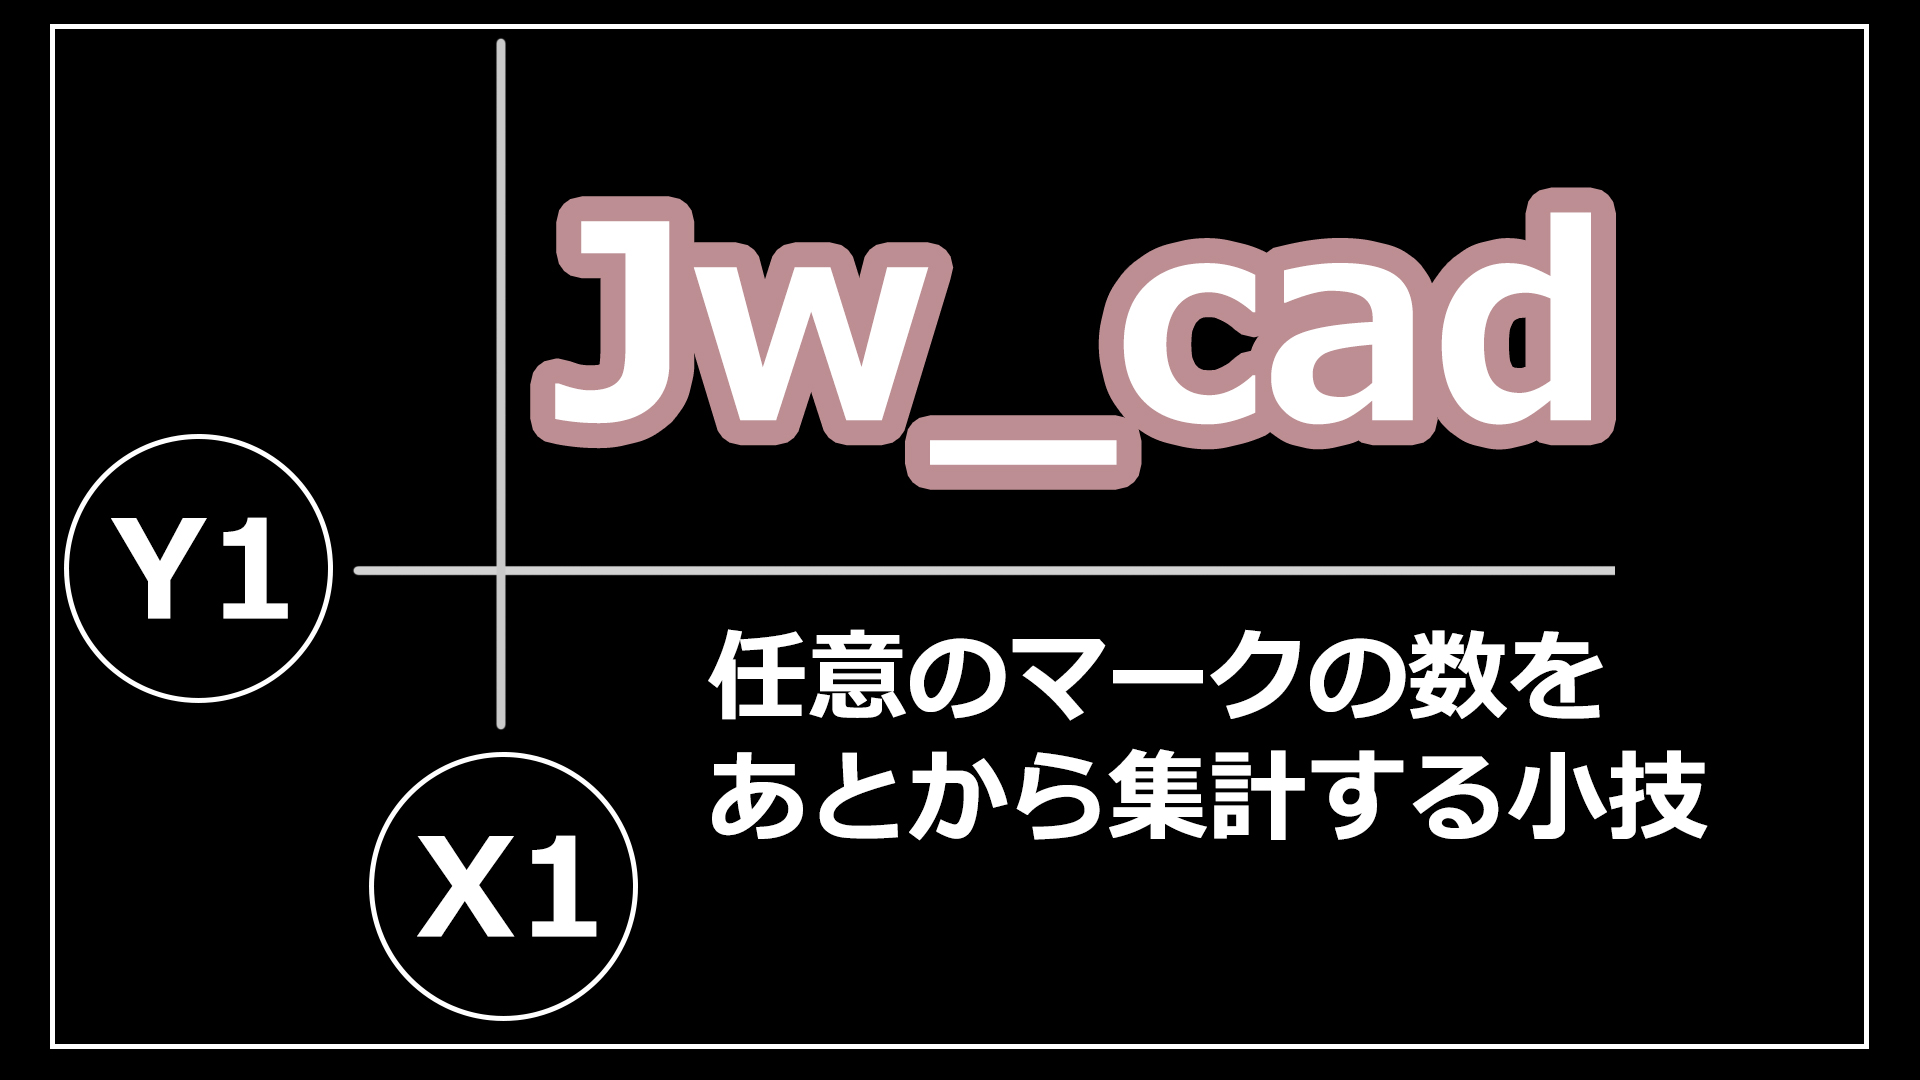 【Jw_Cad】作図したマークの数をあとから集計する為の小技